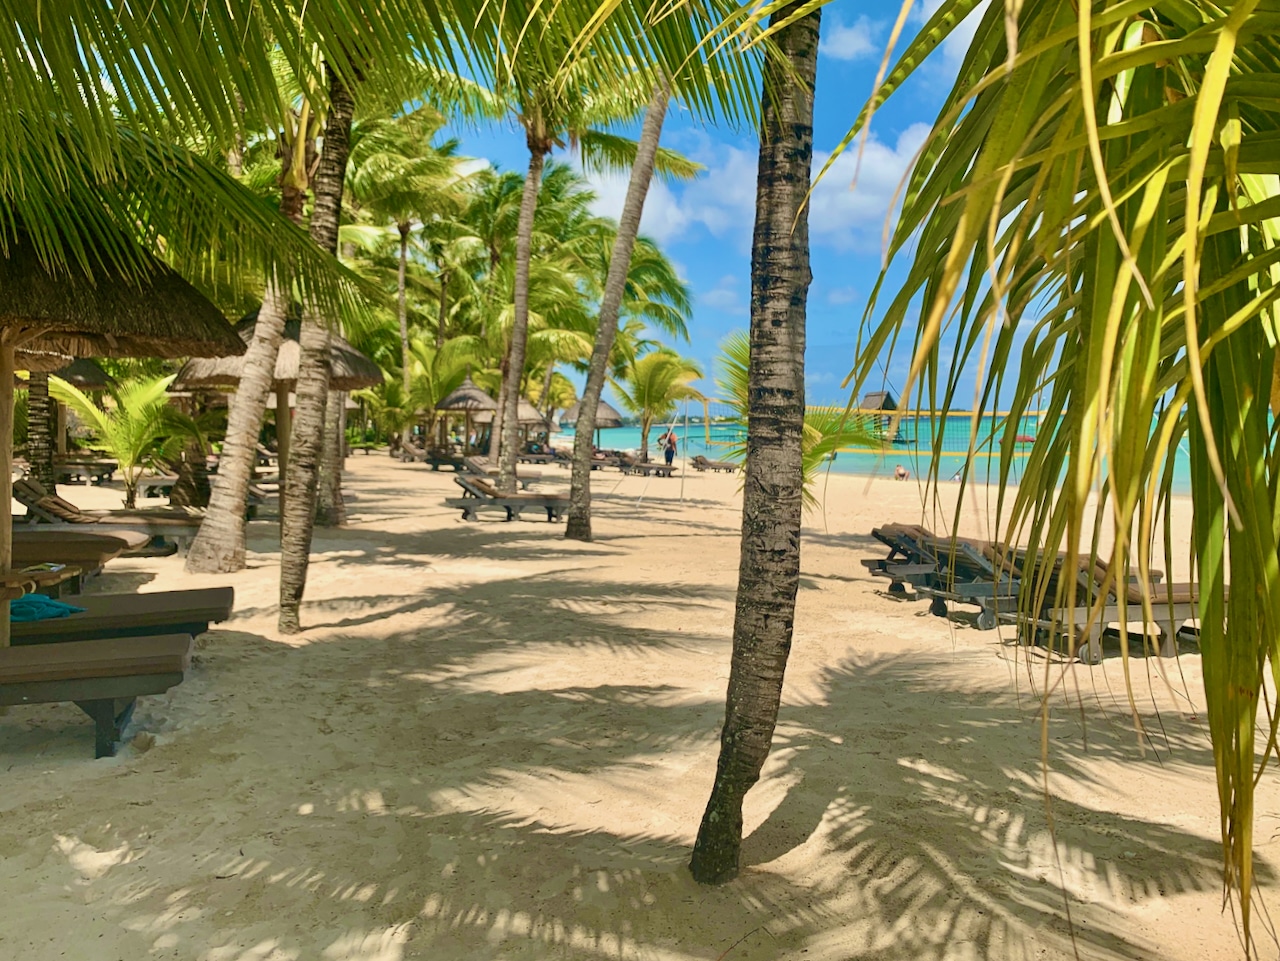 Min første Mauritius oplevelse - velkommen til paradis Mauritius er en tropisk sommerdags drøm - velkommen til paradis. Foto: Sascha Tegtmeyer